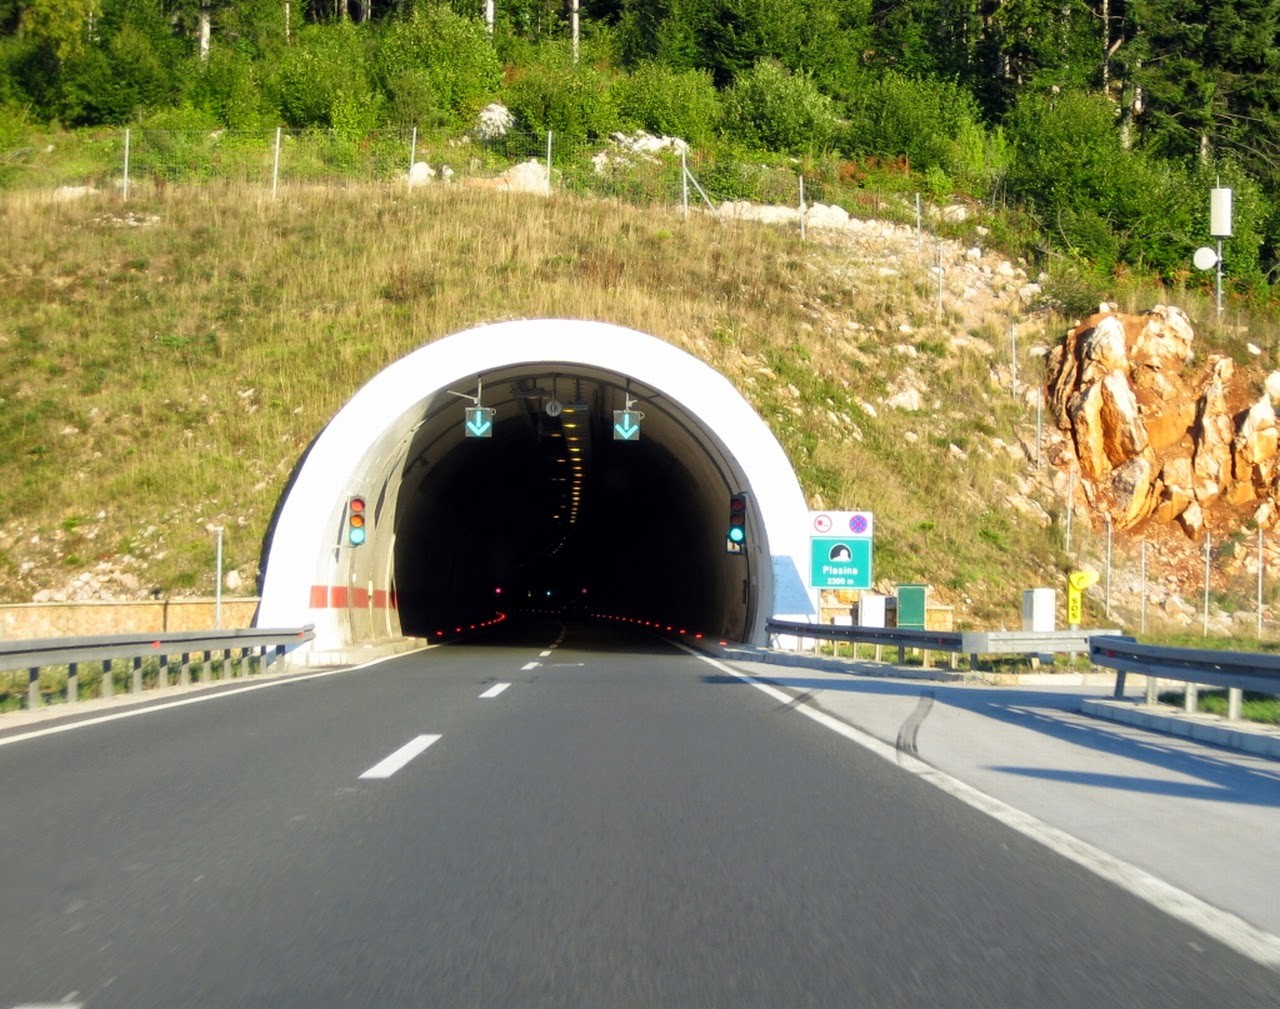 Δεν πιστεύουν στα μάτια τους οι οδηγοί όταν βλέπουν αυτό που υπάρχει πάνω από το τούνελ (φωτο)